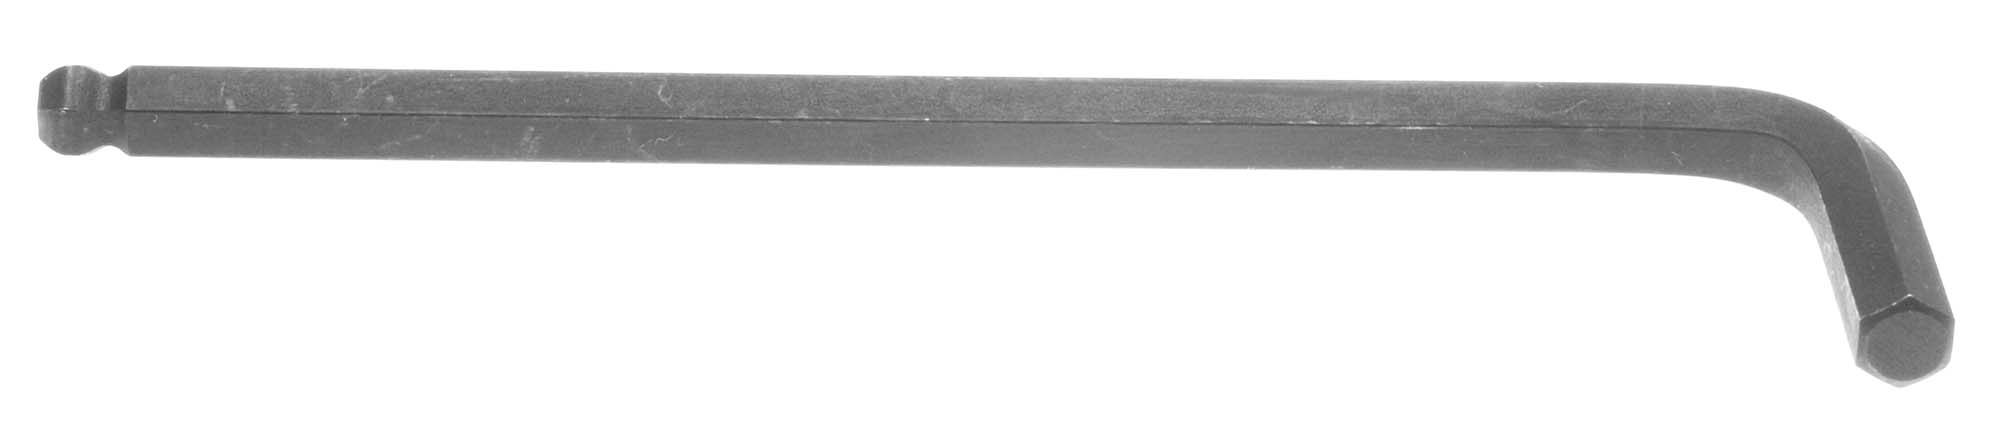 1/4" Bondhus Balldriver L-Wrench Hex Key